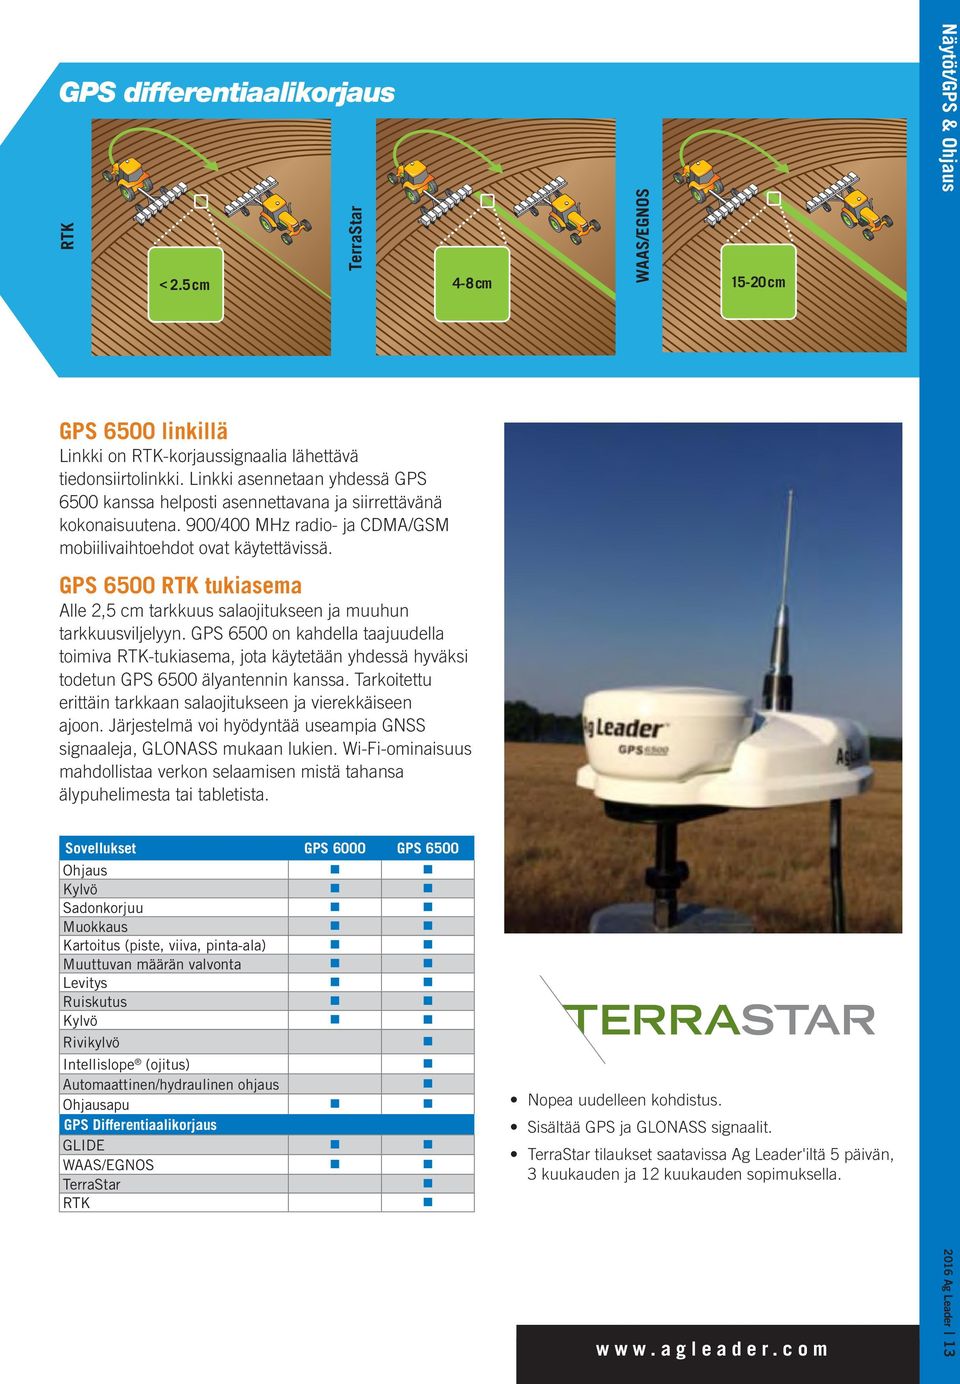 GPS 6500 RTK tukiasema Alle 2,5 cm tarkkuus salaojitukseen ja muuhun tarkkuusviljelyyn.